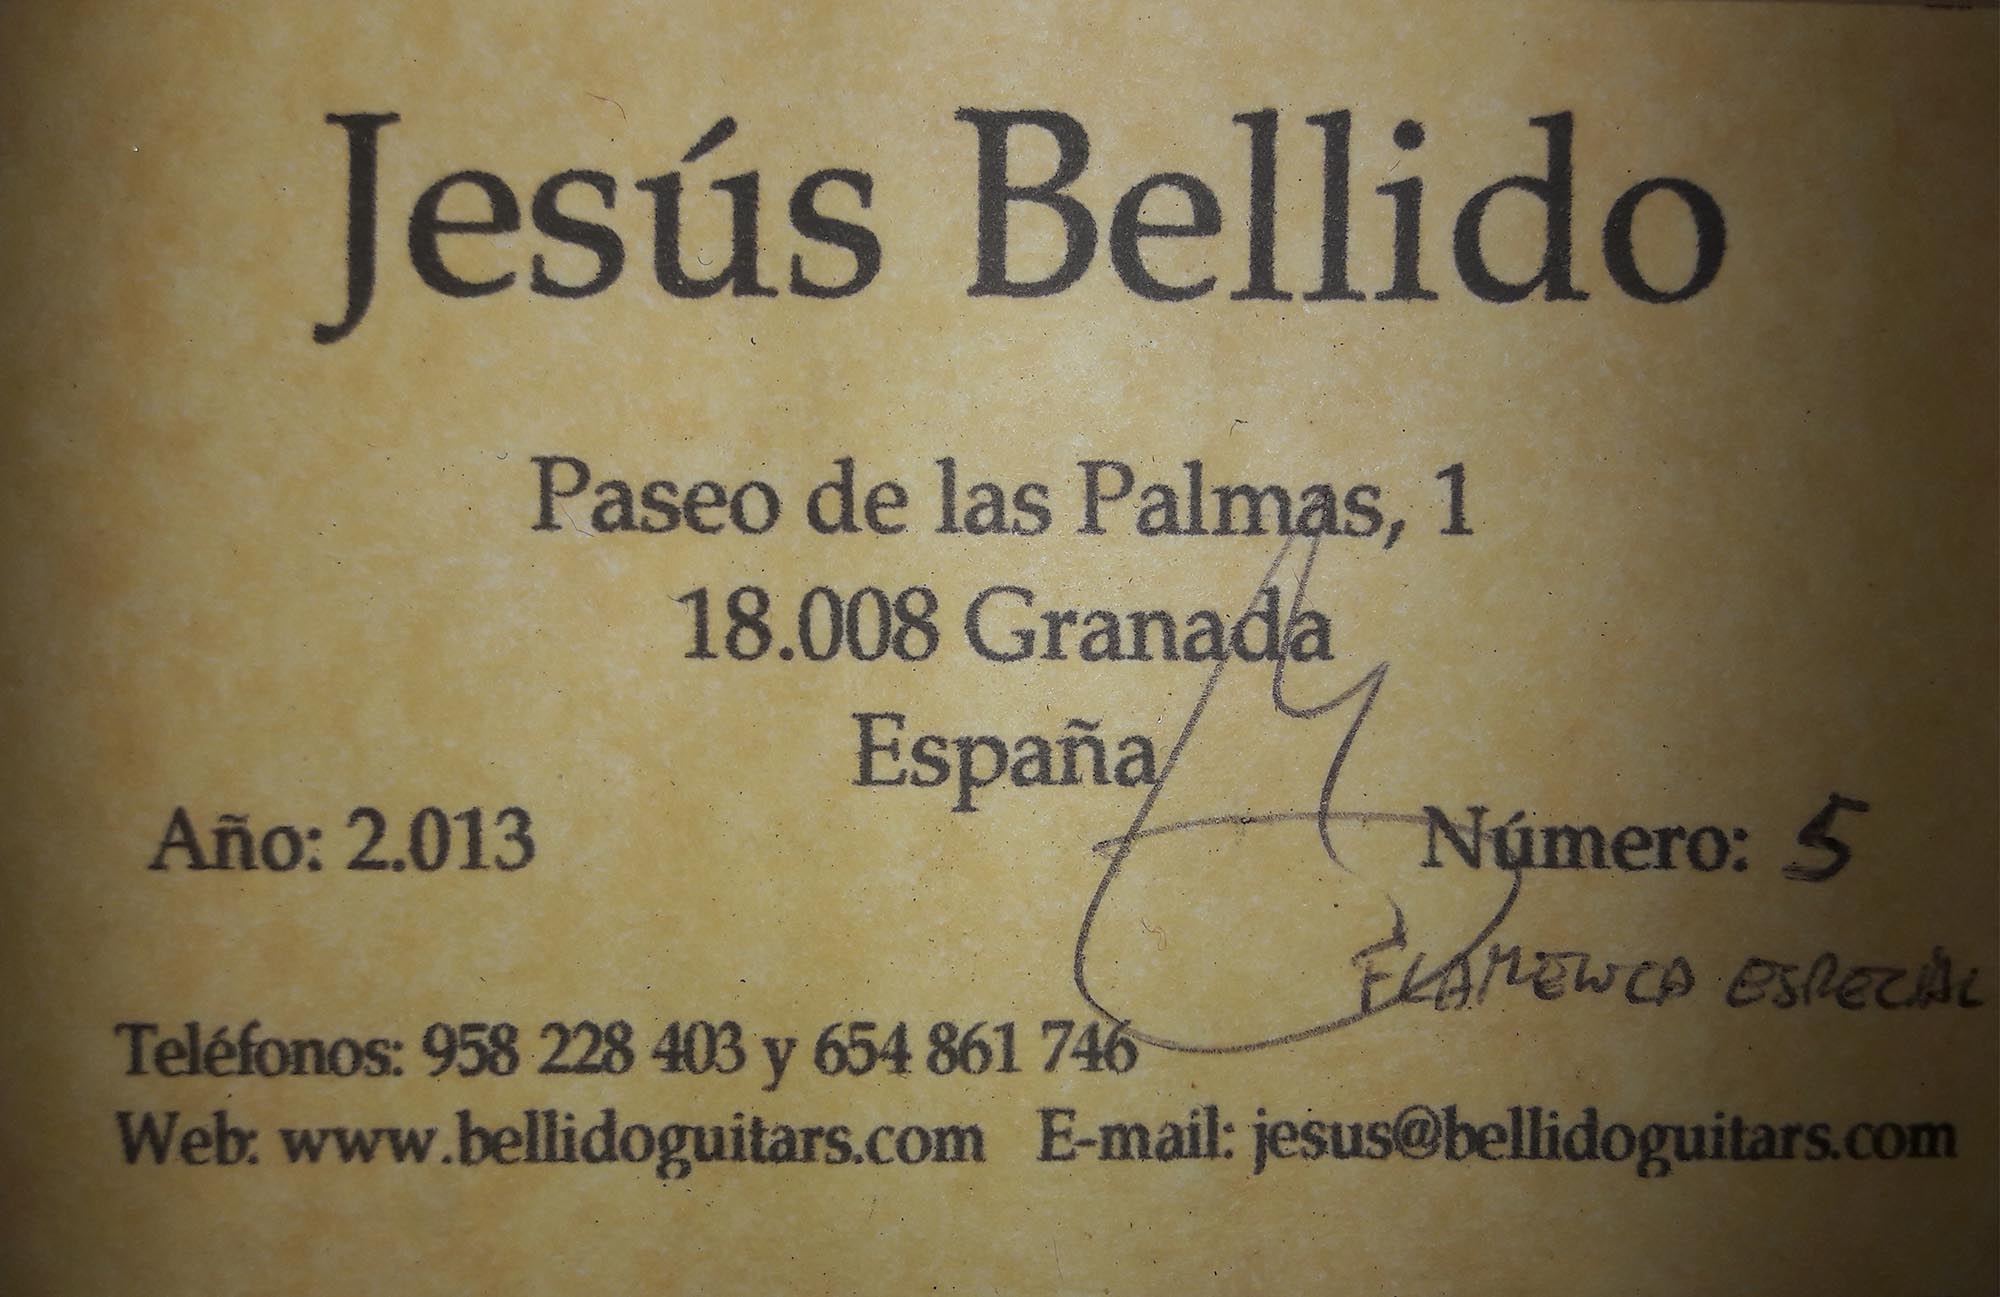 a jesus bellido 2013 15082018 label